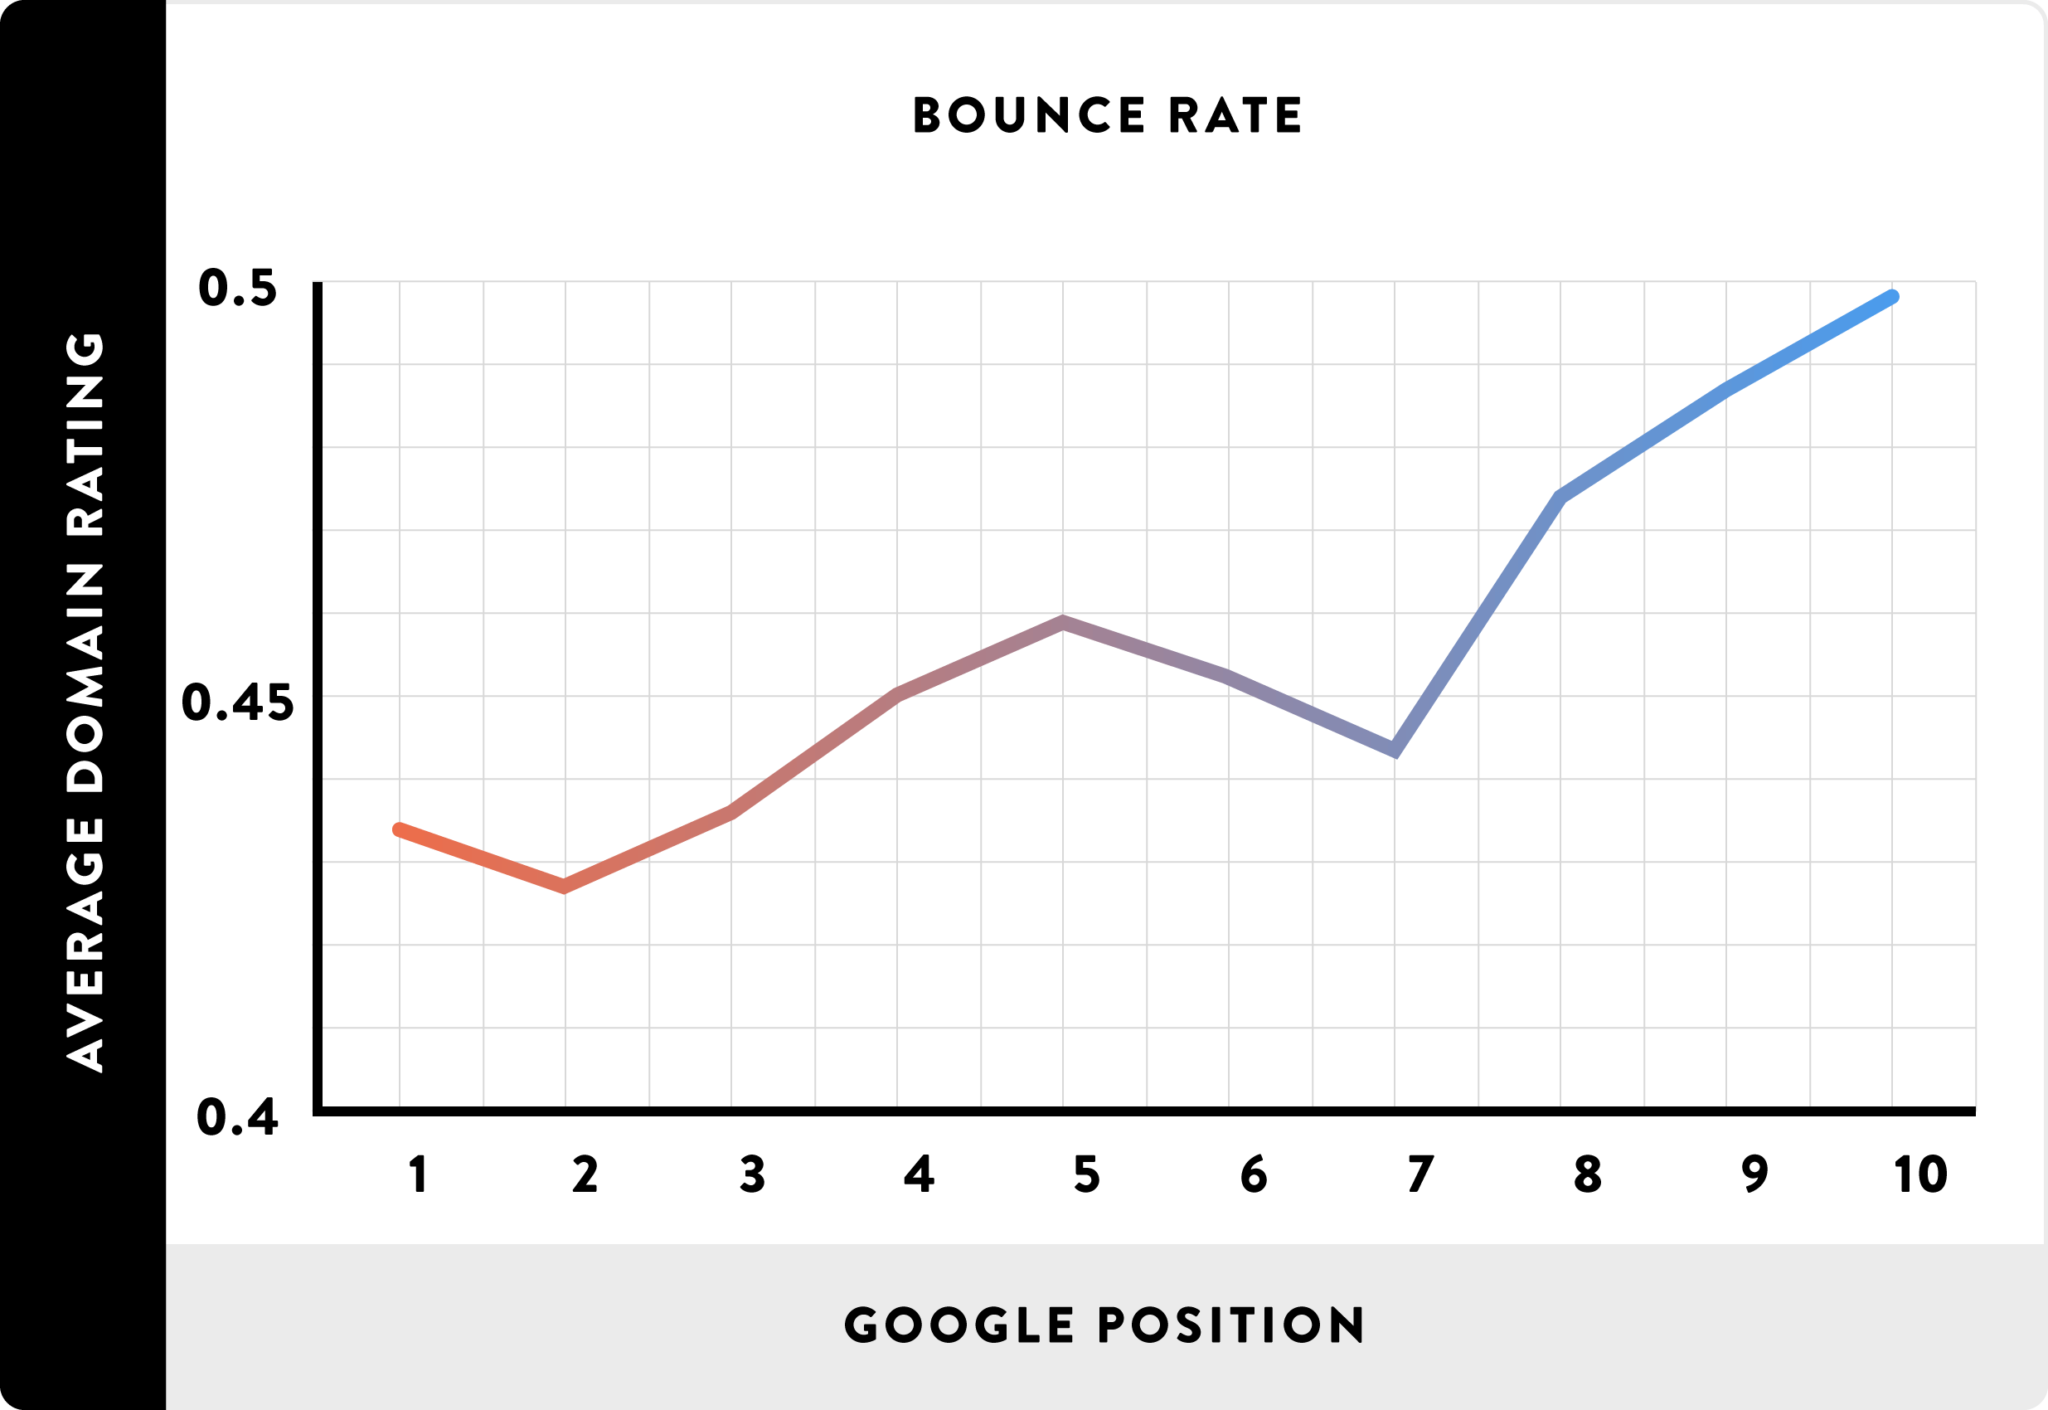 Tỷ lệ thoát trang / bounce rate thấp liên hệ mạnh với thứ hạng cao trên máy tìm kiếm